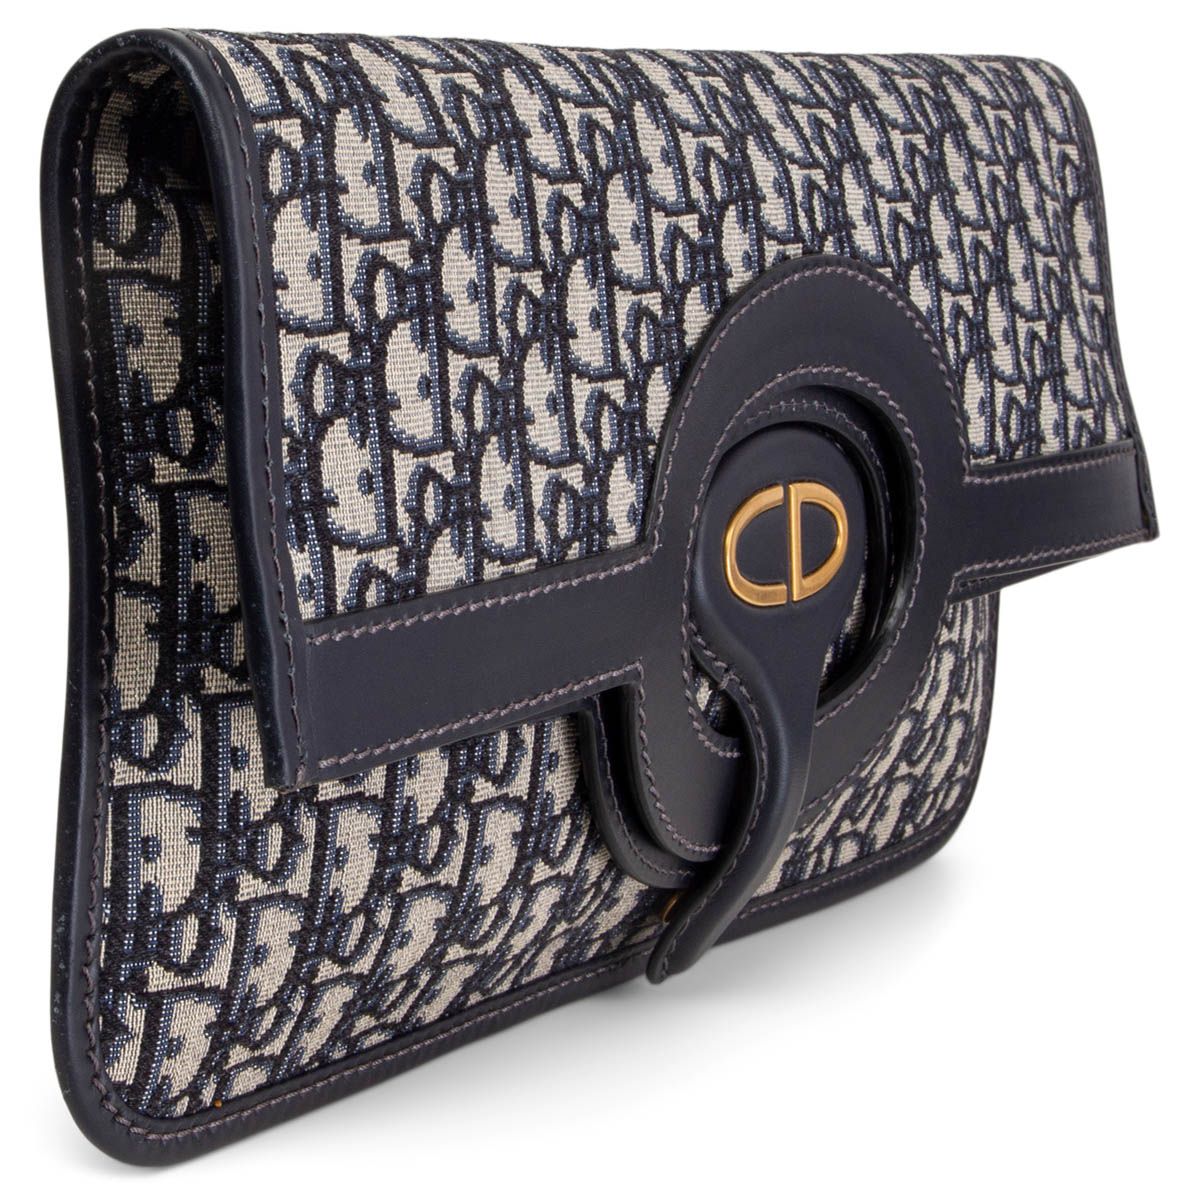 Lady Dior Clutch Bag